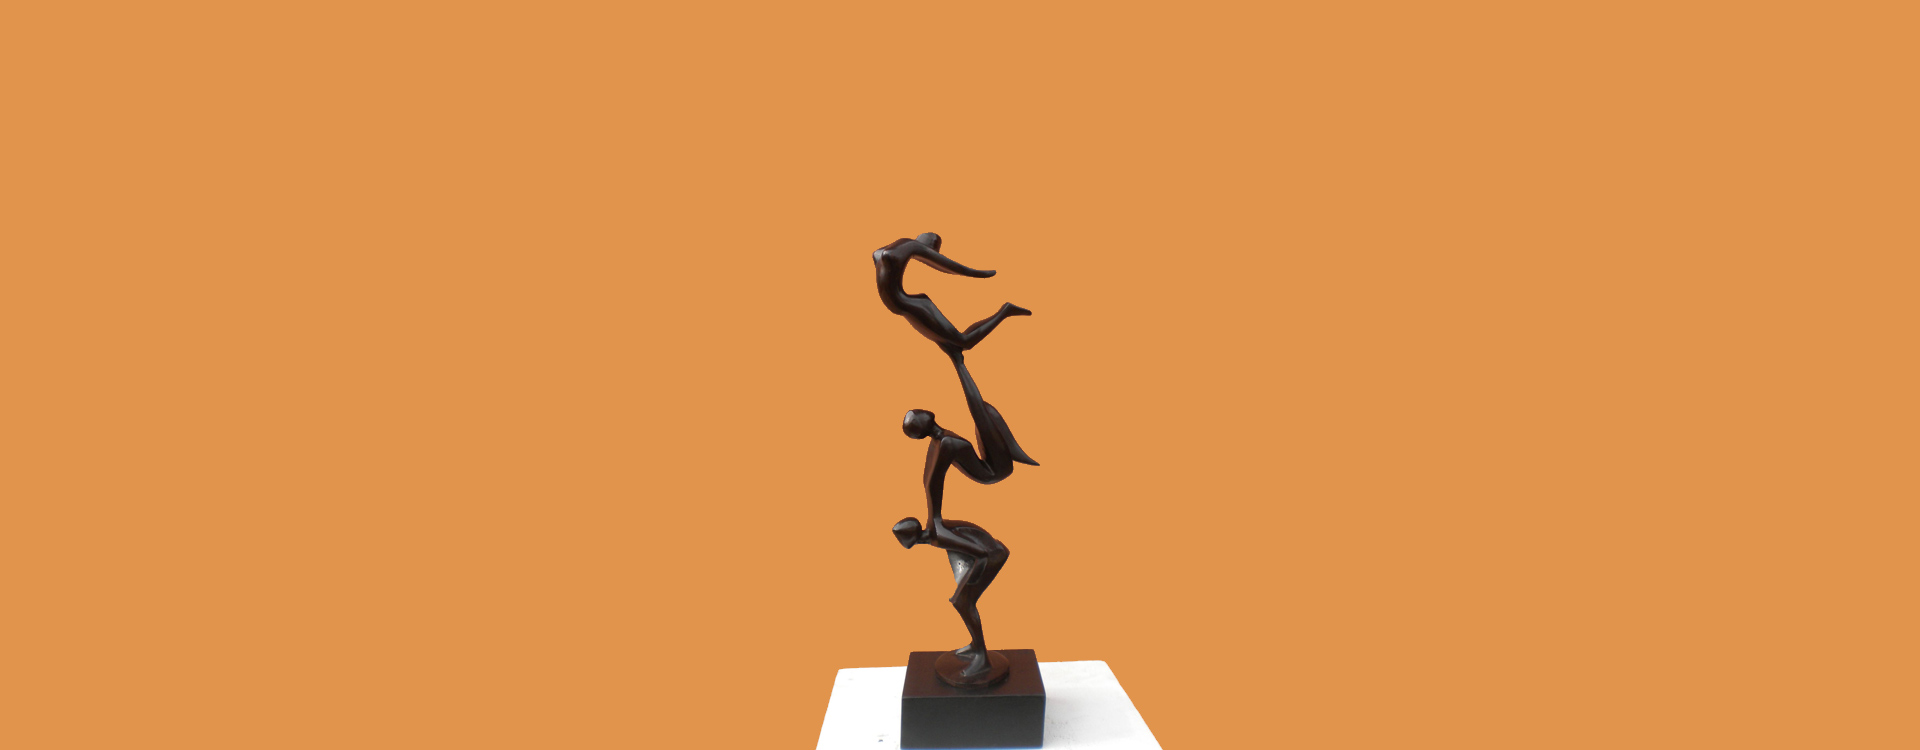 sculpture bronze toulouse